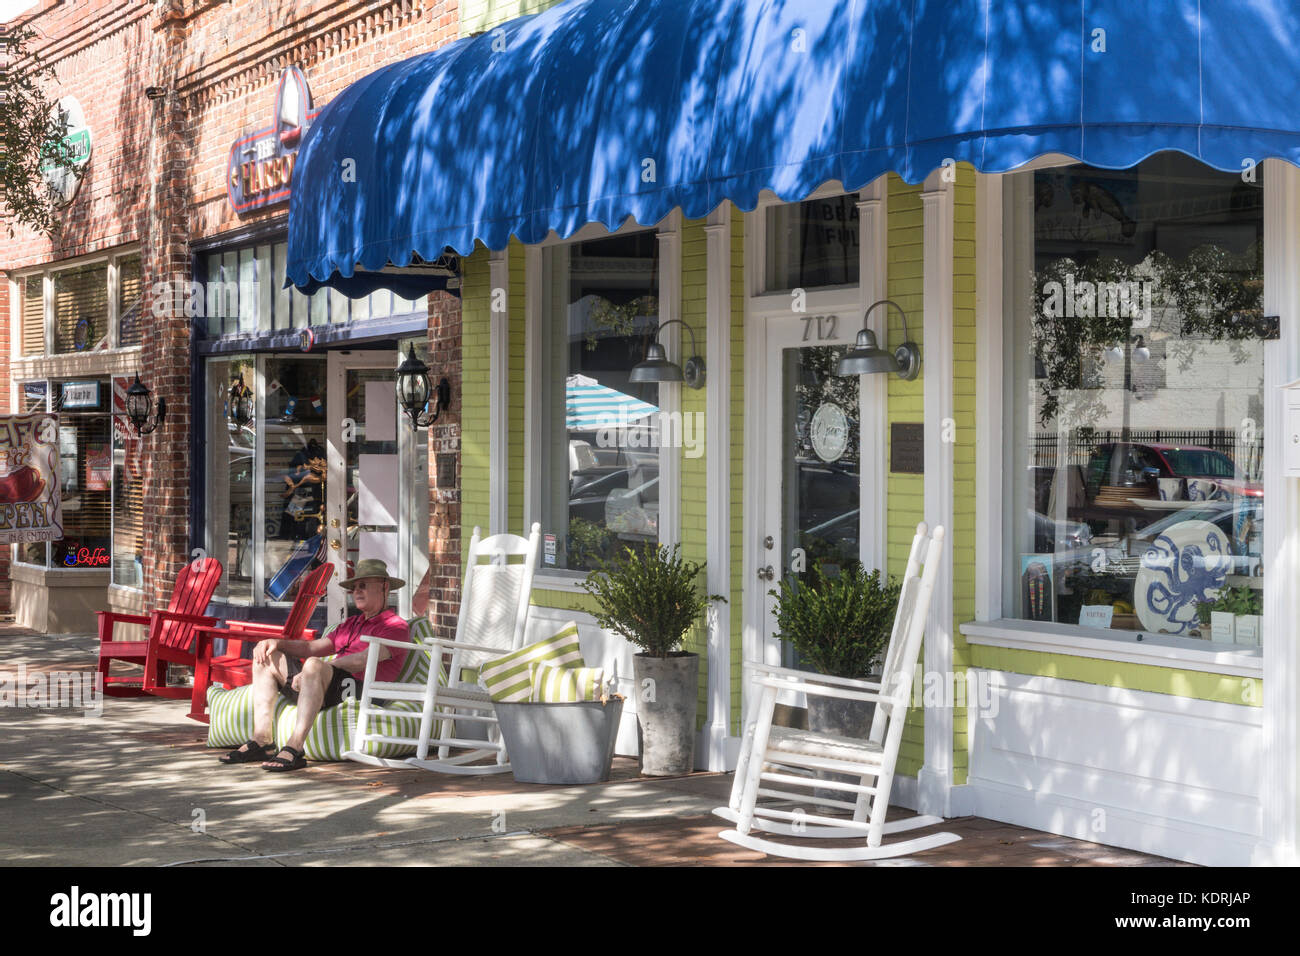 Whimsy roost store dans le quartier historique de Georgetown, Caroline du Sud, USA Banque D'Images